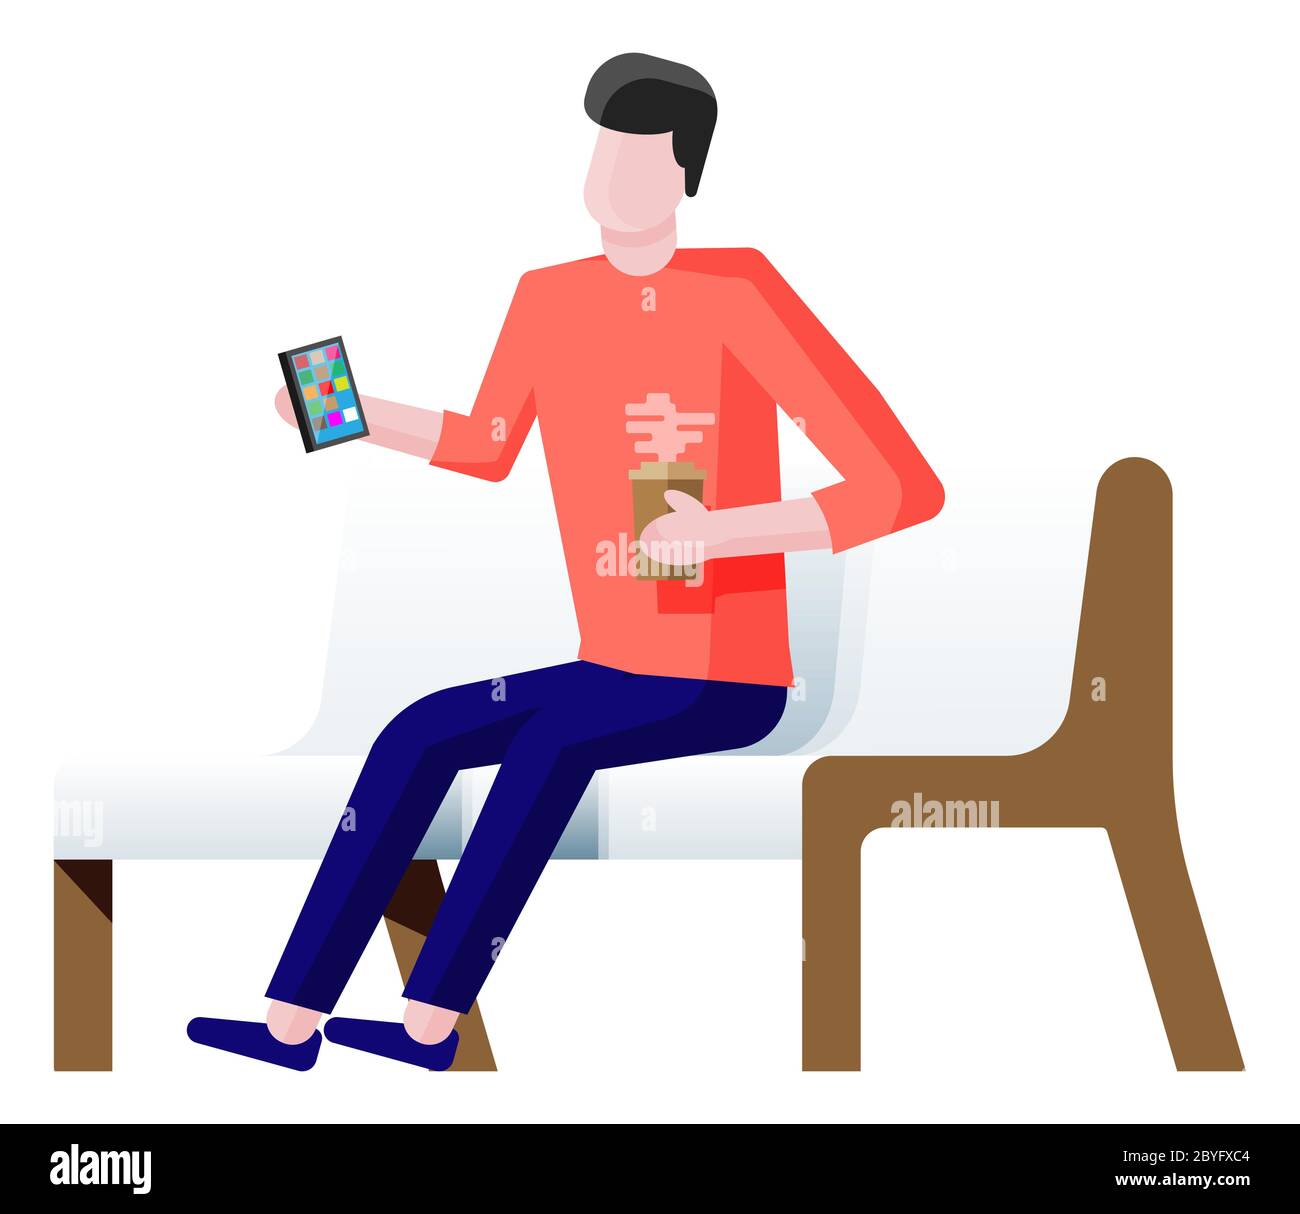 Personnage de dessin animé assis sur un banc et surfer sur Internet dans un smartphone. Homme assis avec téléphone portable à la main. Illustration vectorielle plate isolée Illustration de Vecteur